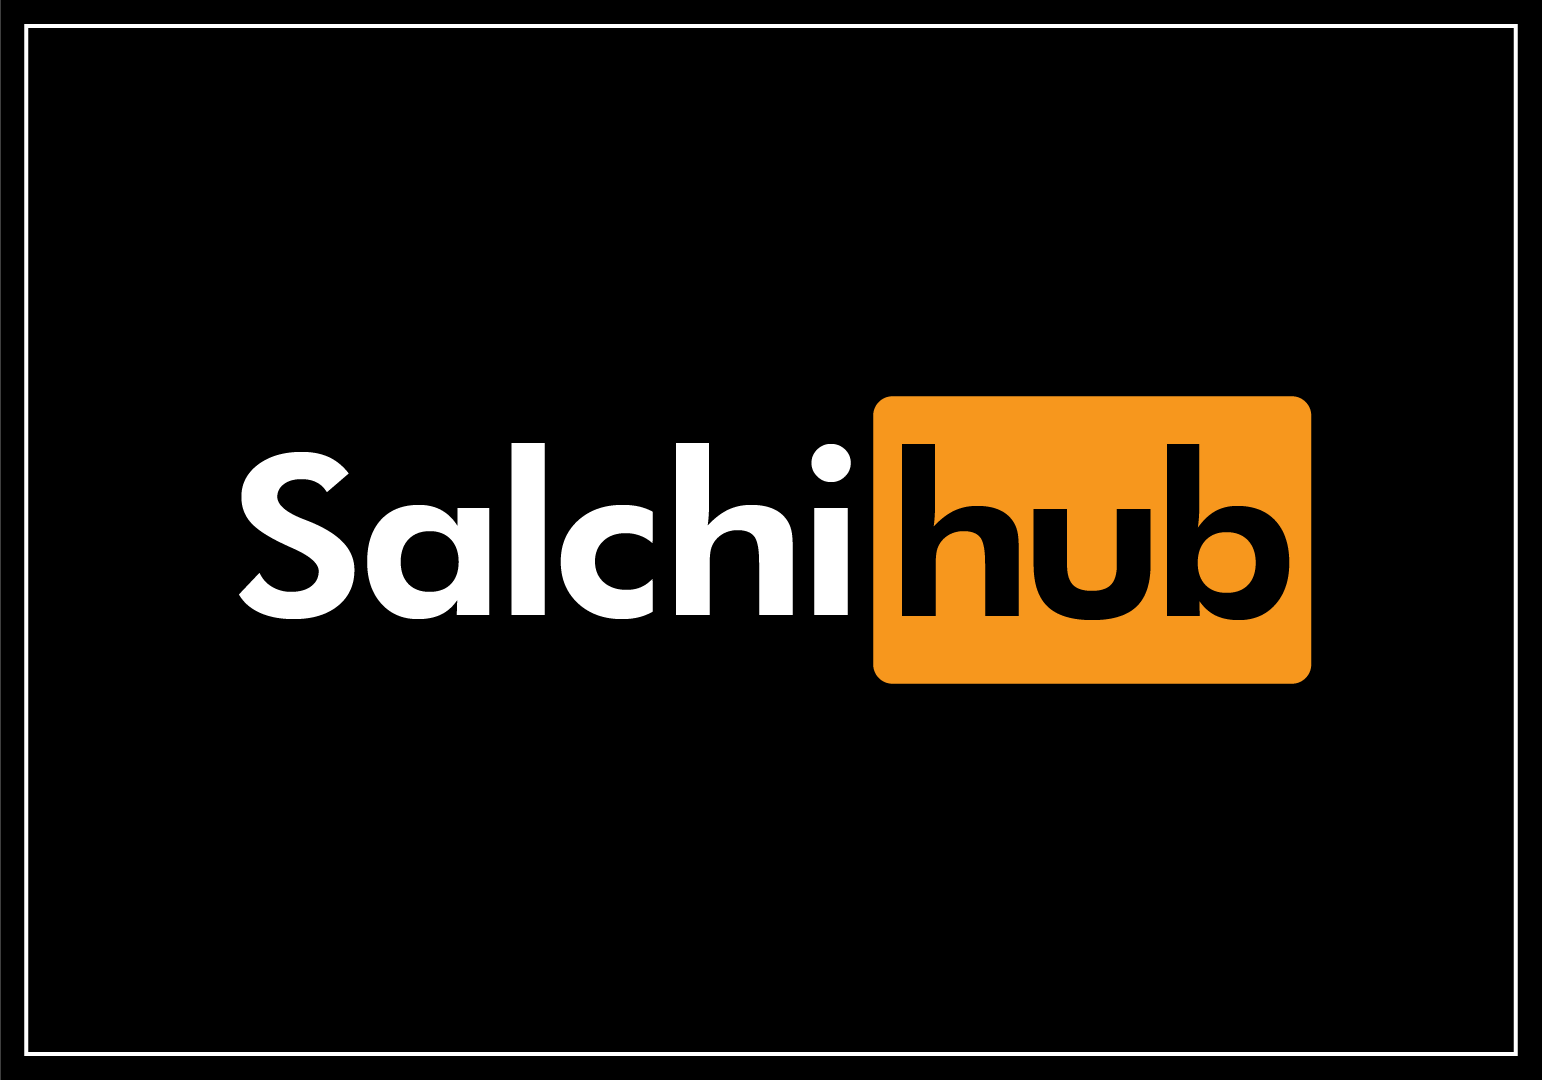 SalchiHub